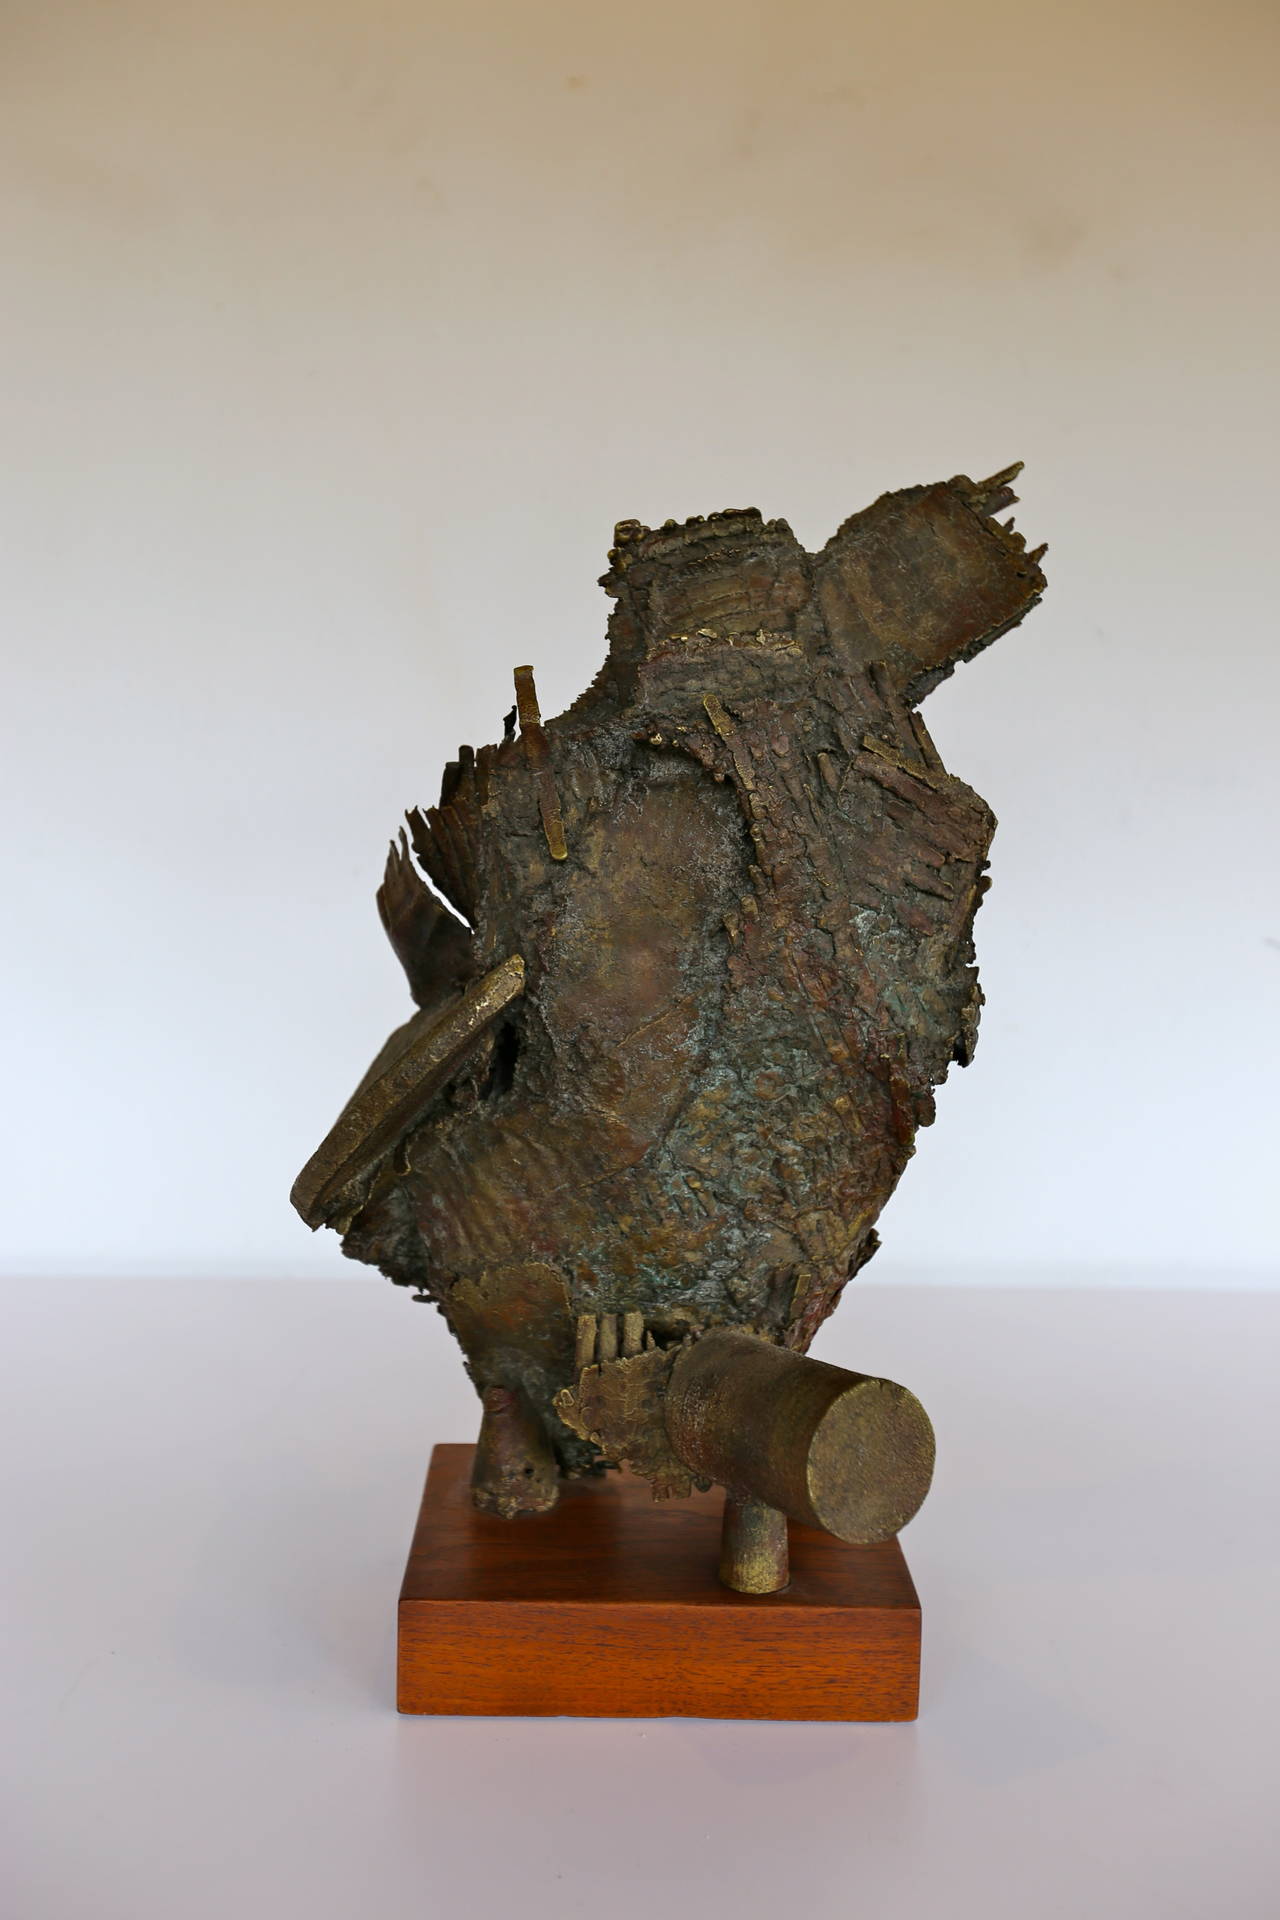 Abstract bronze sculpture by California artist Russell Baldwin.